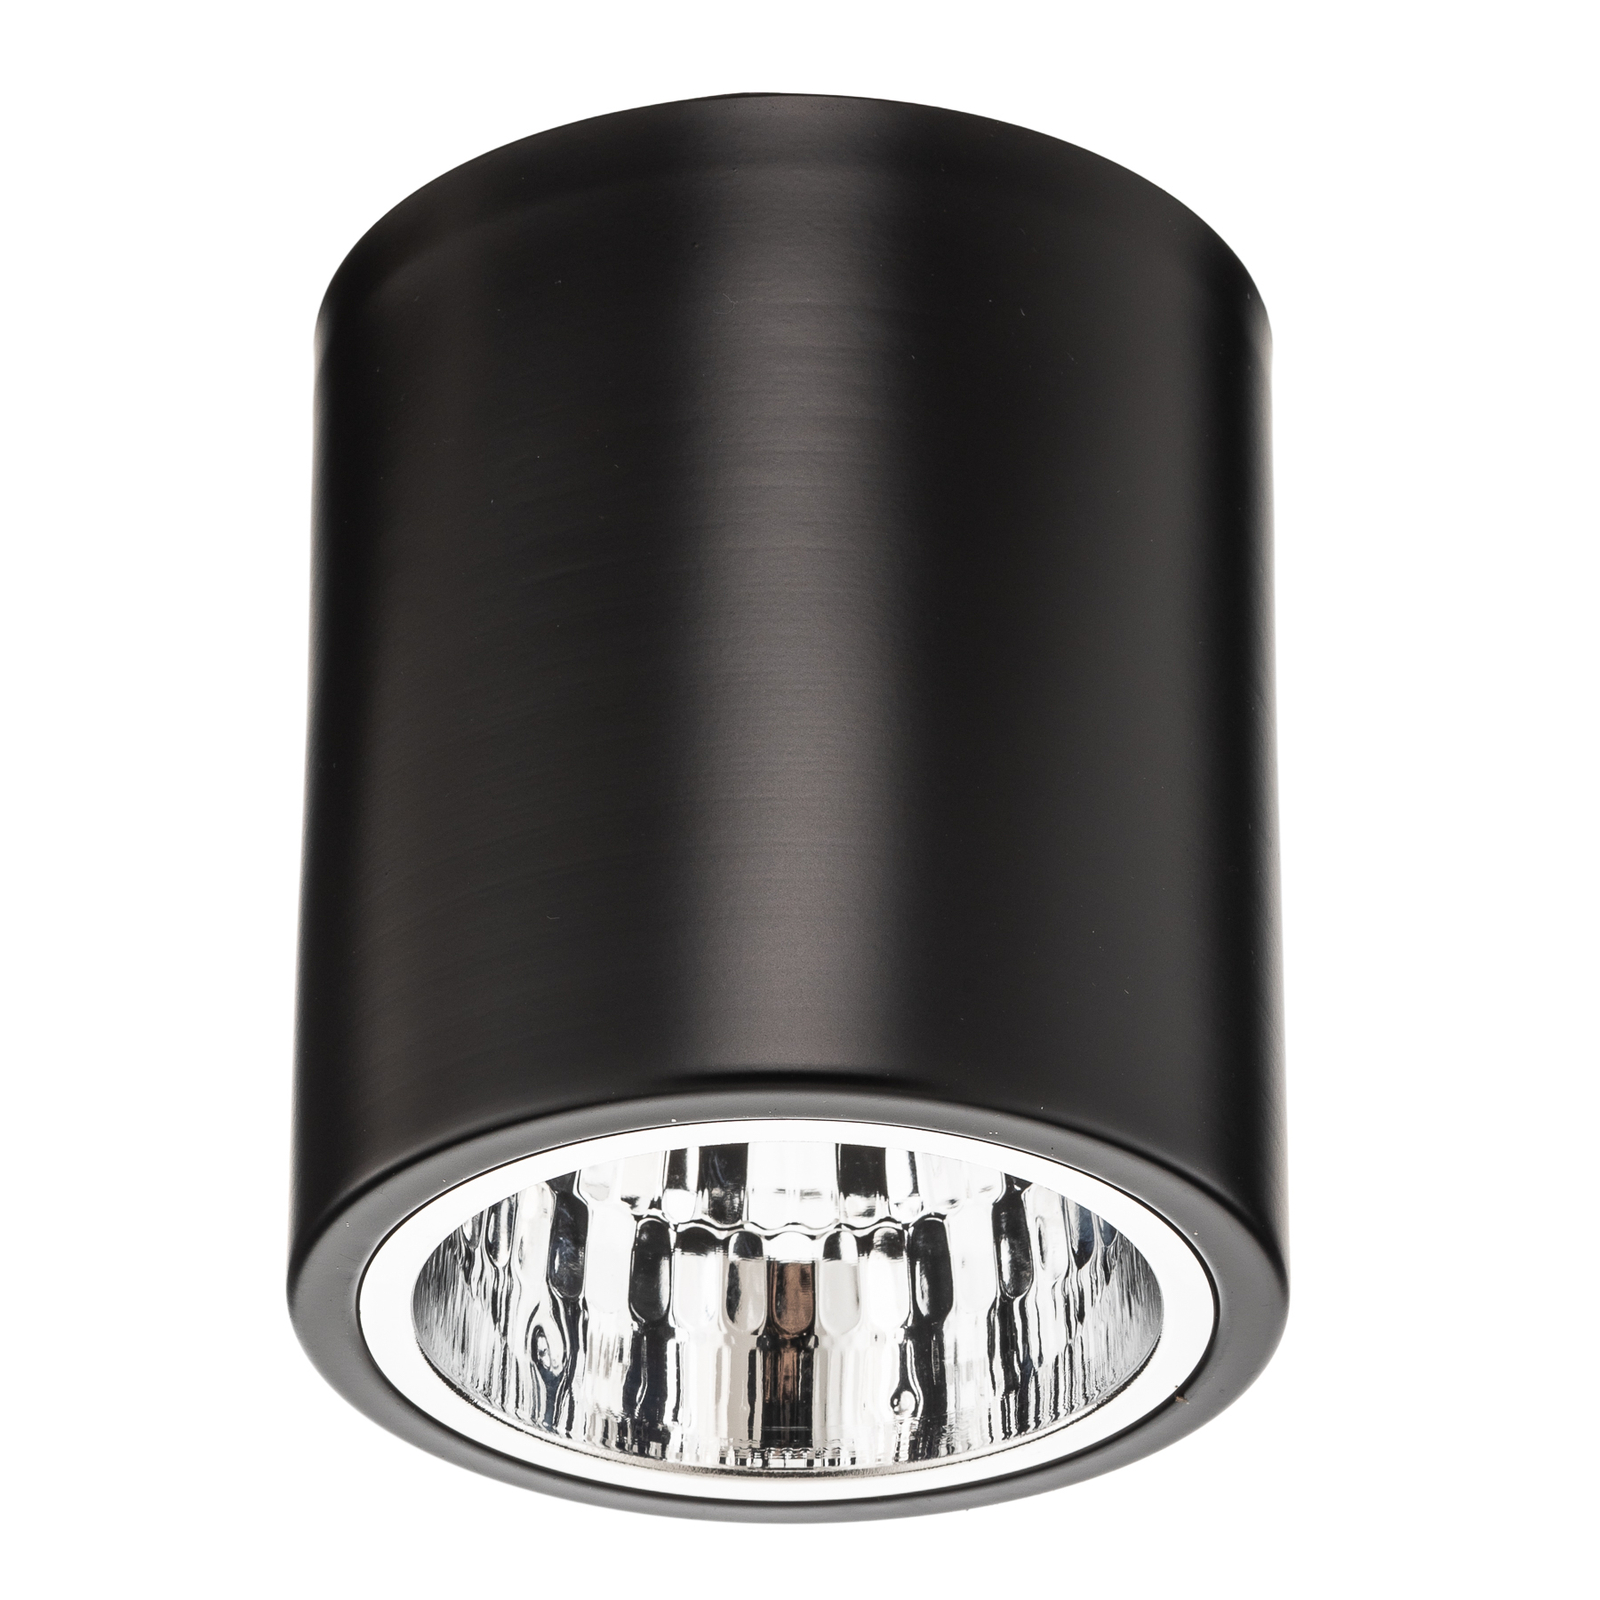 Reflektor sufitowy typu downlight w kolorze czarnym, Ø 13,3 cm